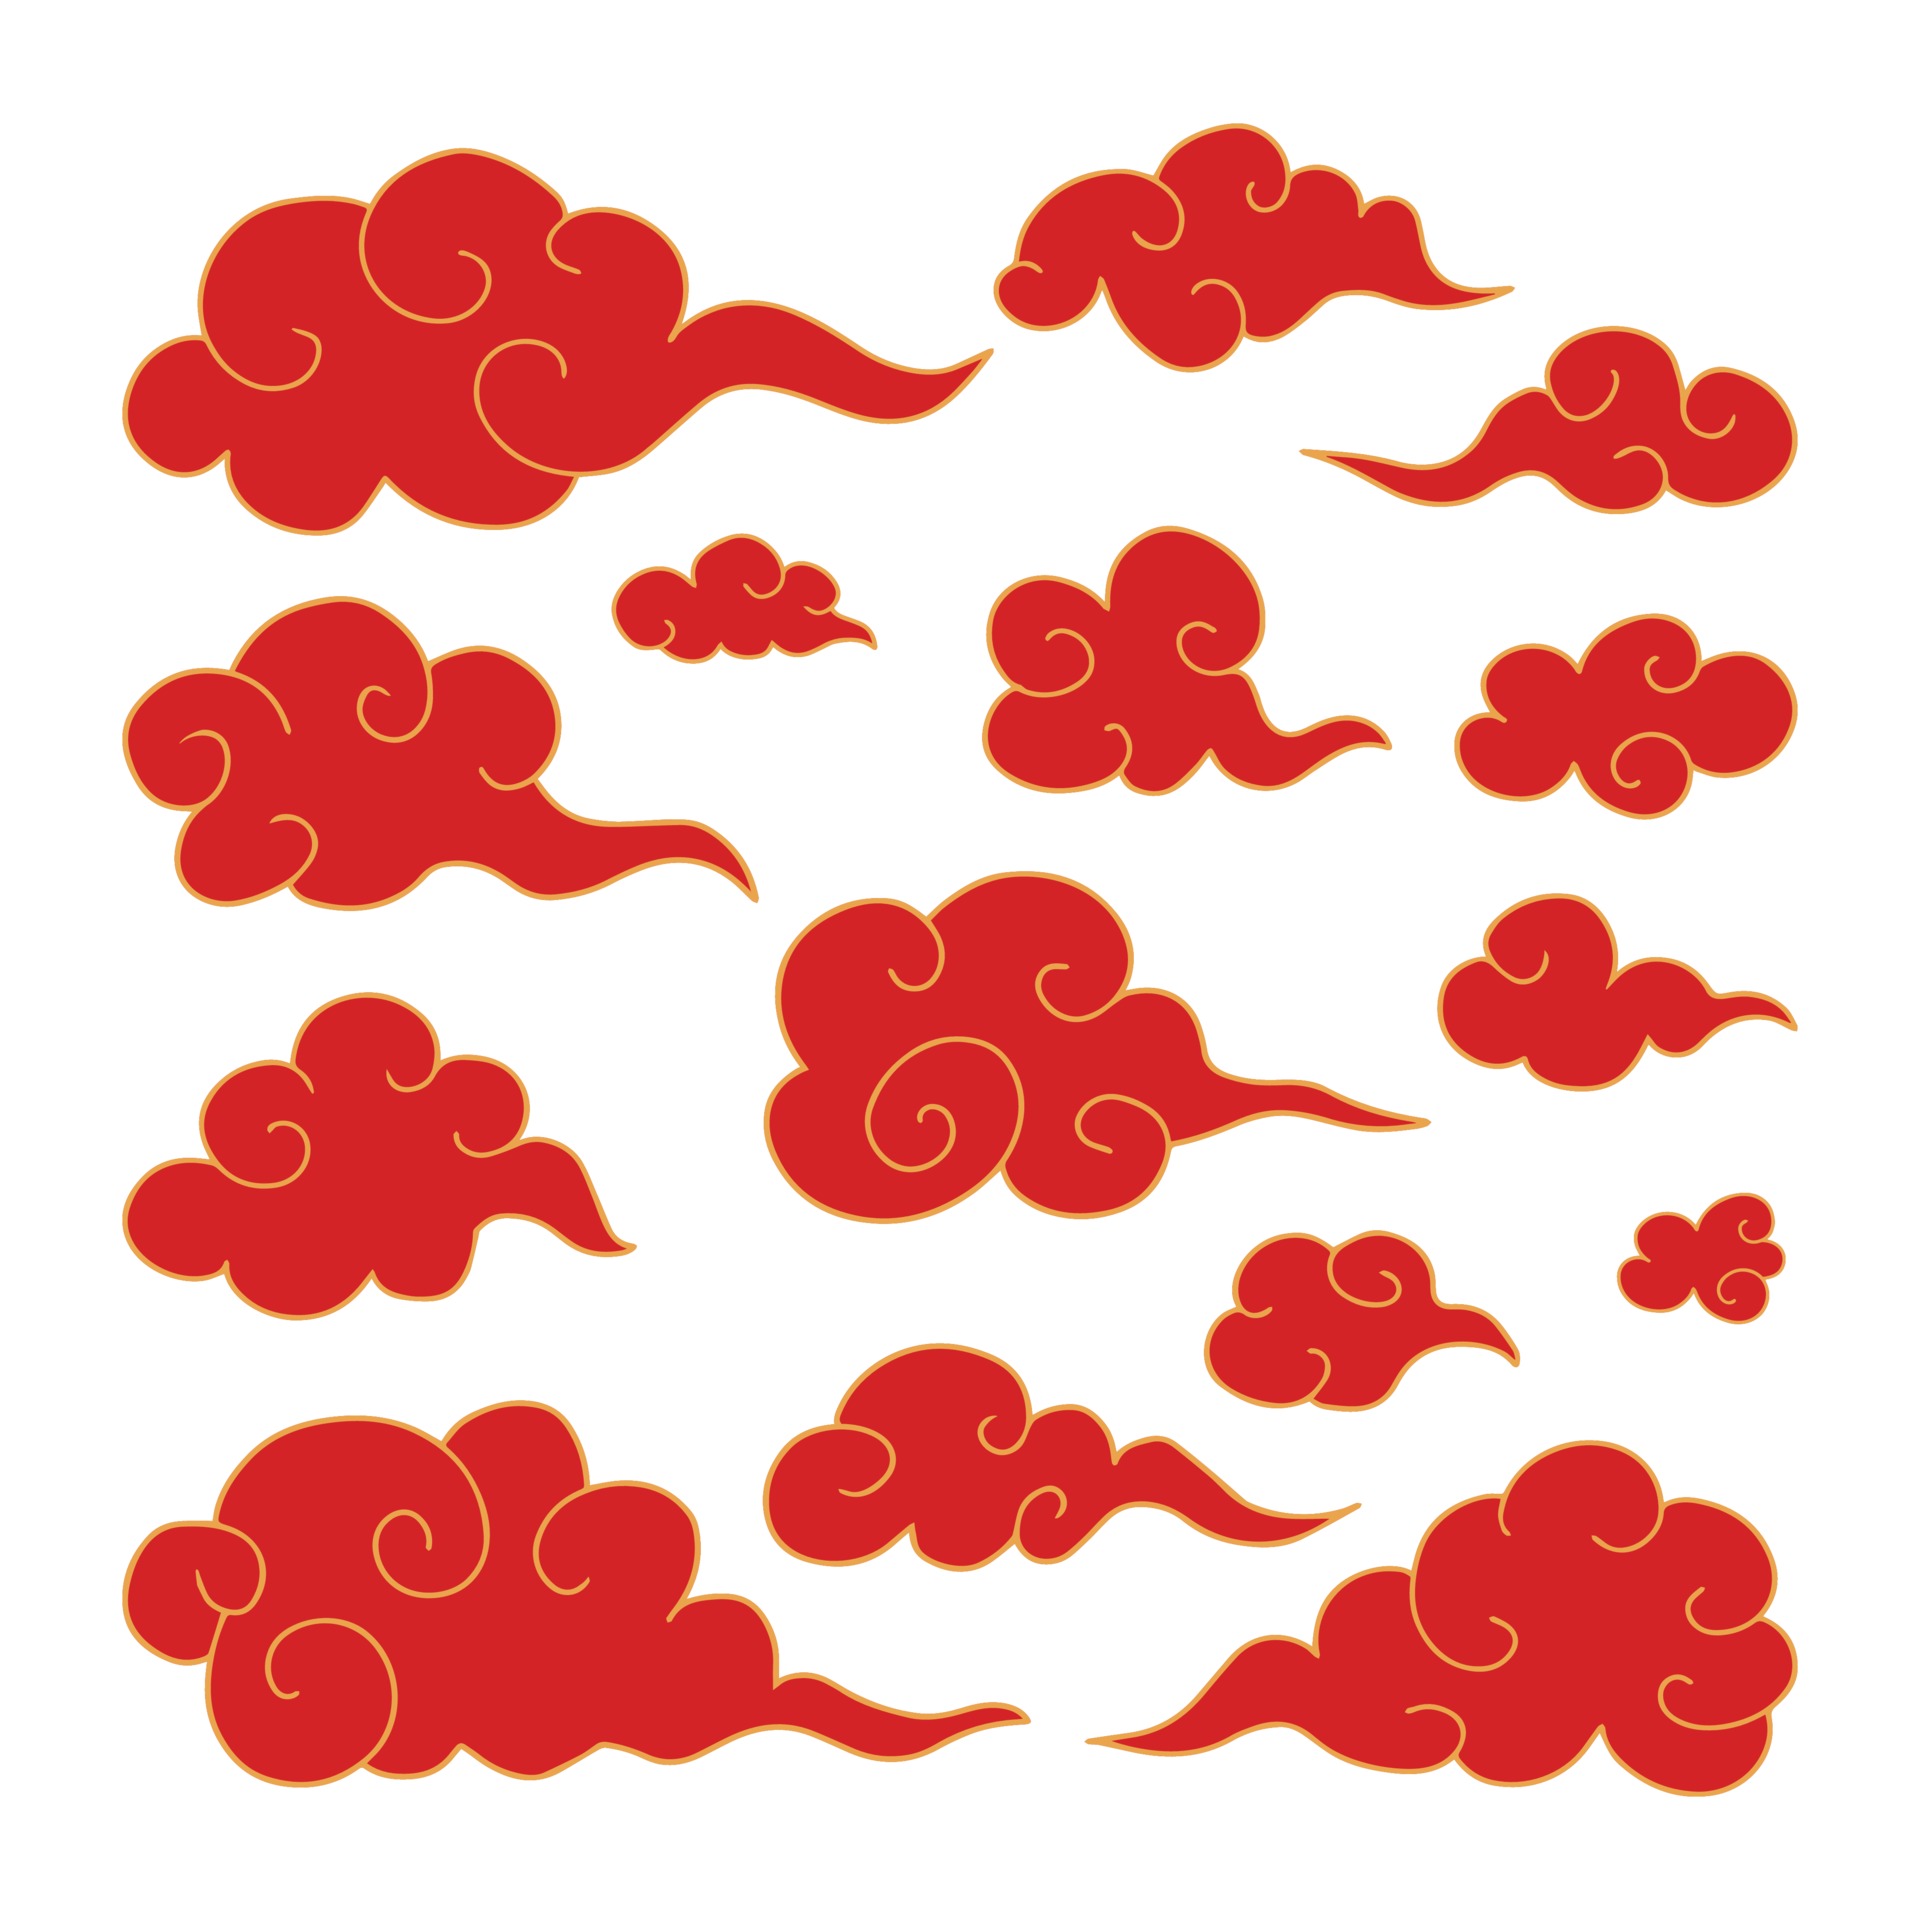 ícone De Nuvens De Cultura Japonesa Dos Desenhos Animados PNG , Vermelho,  Coleção, Japão Imagem PNG e PSD Para Download Gratuito